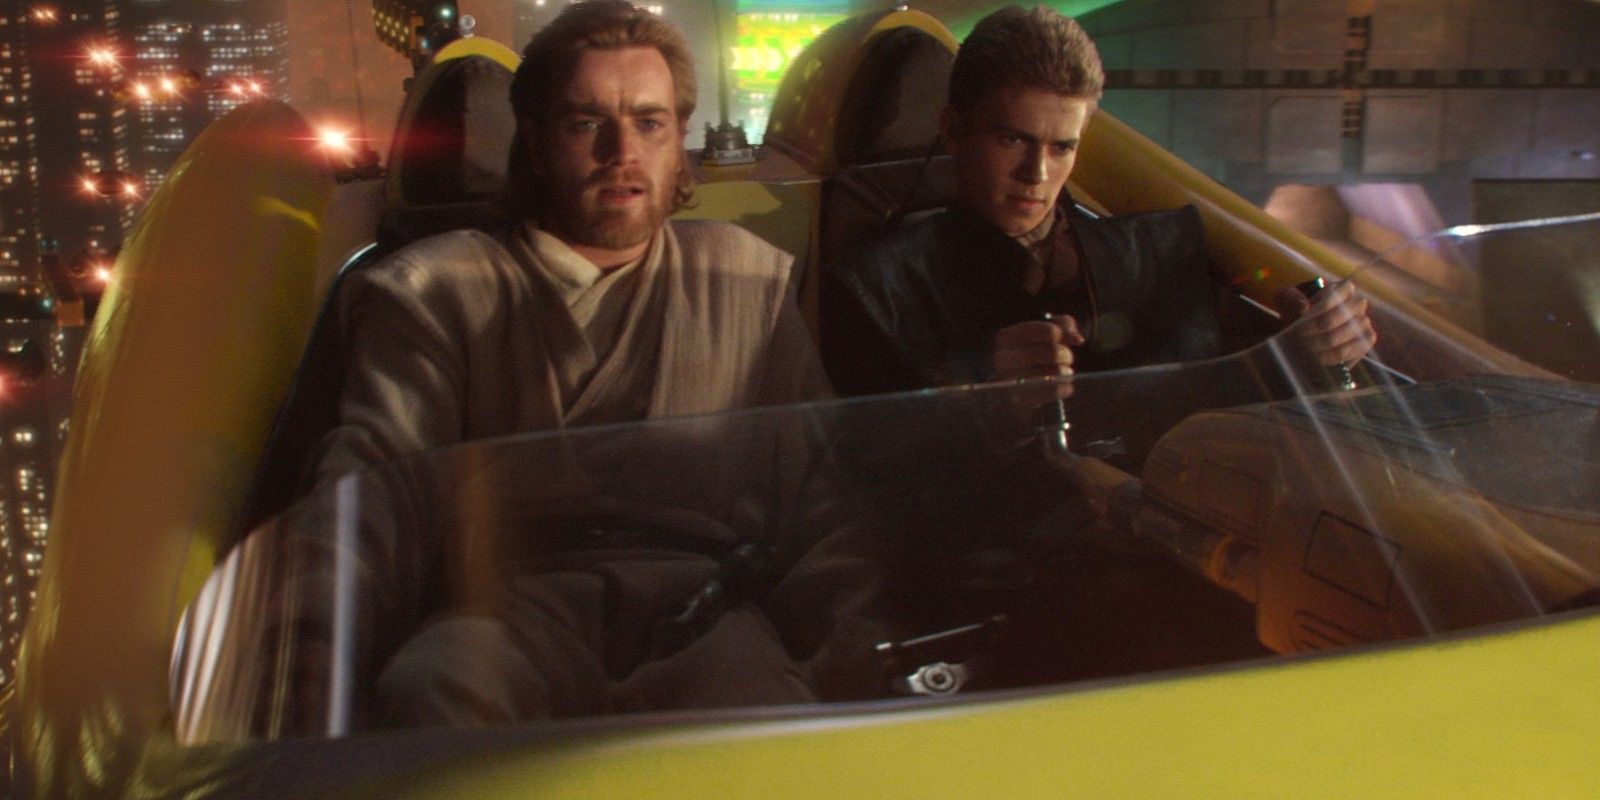 Ewan McGregor as Obi-Wan Kenobi and Hayden Christensen as Anakin Skywalker in a speeder on Coruscant in Star Wars Attack of the Clones